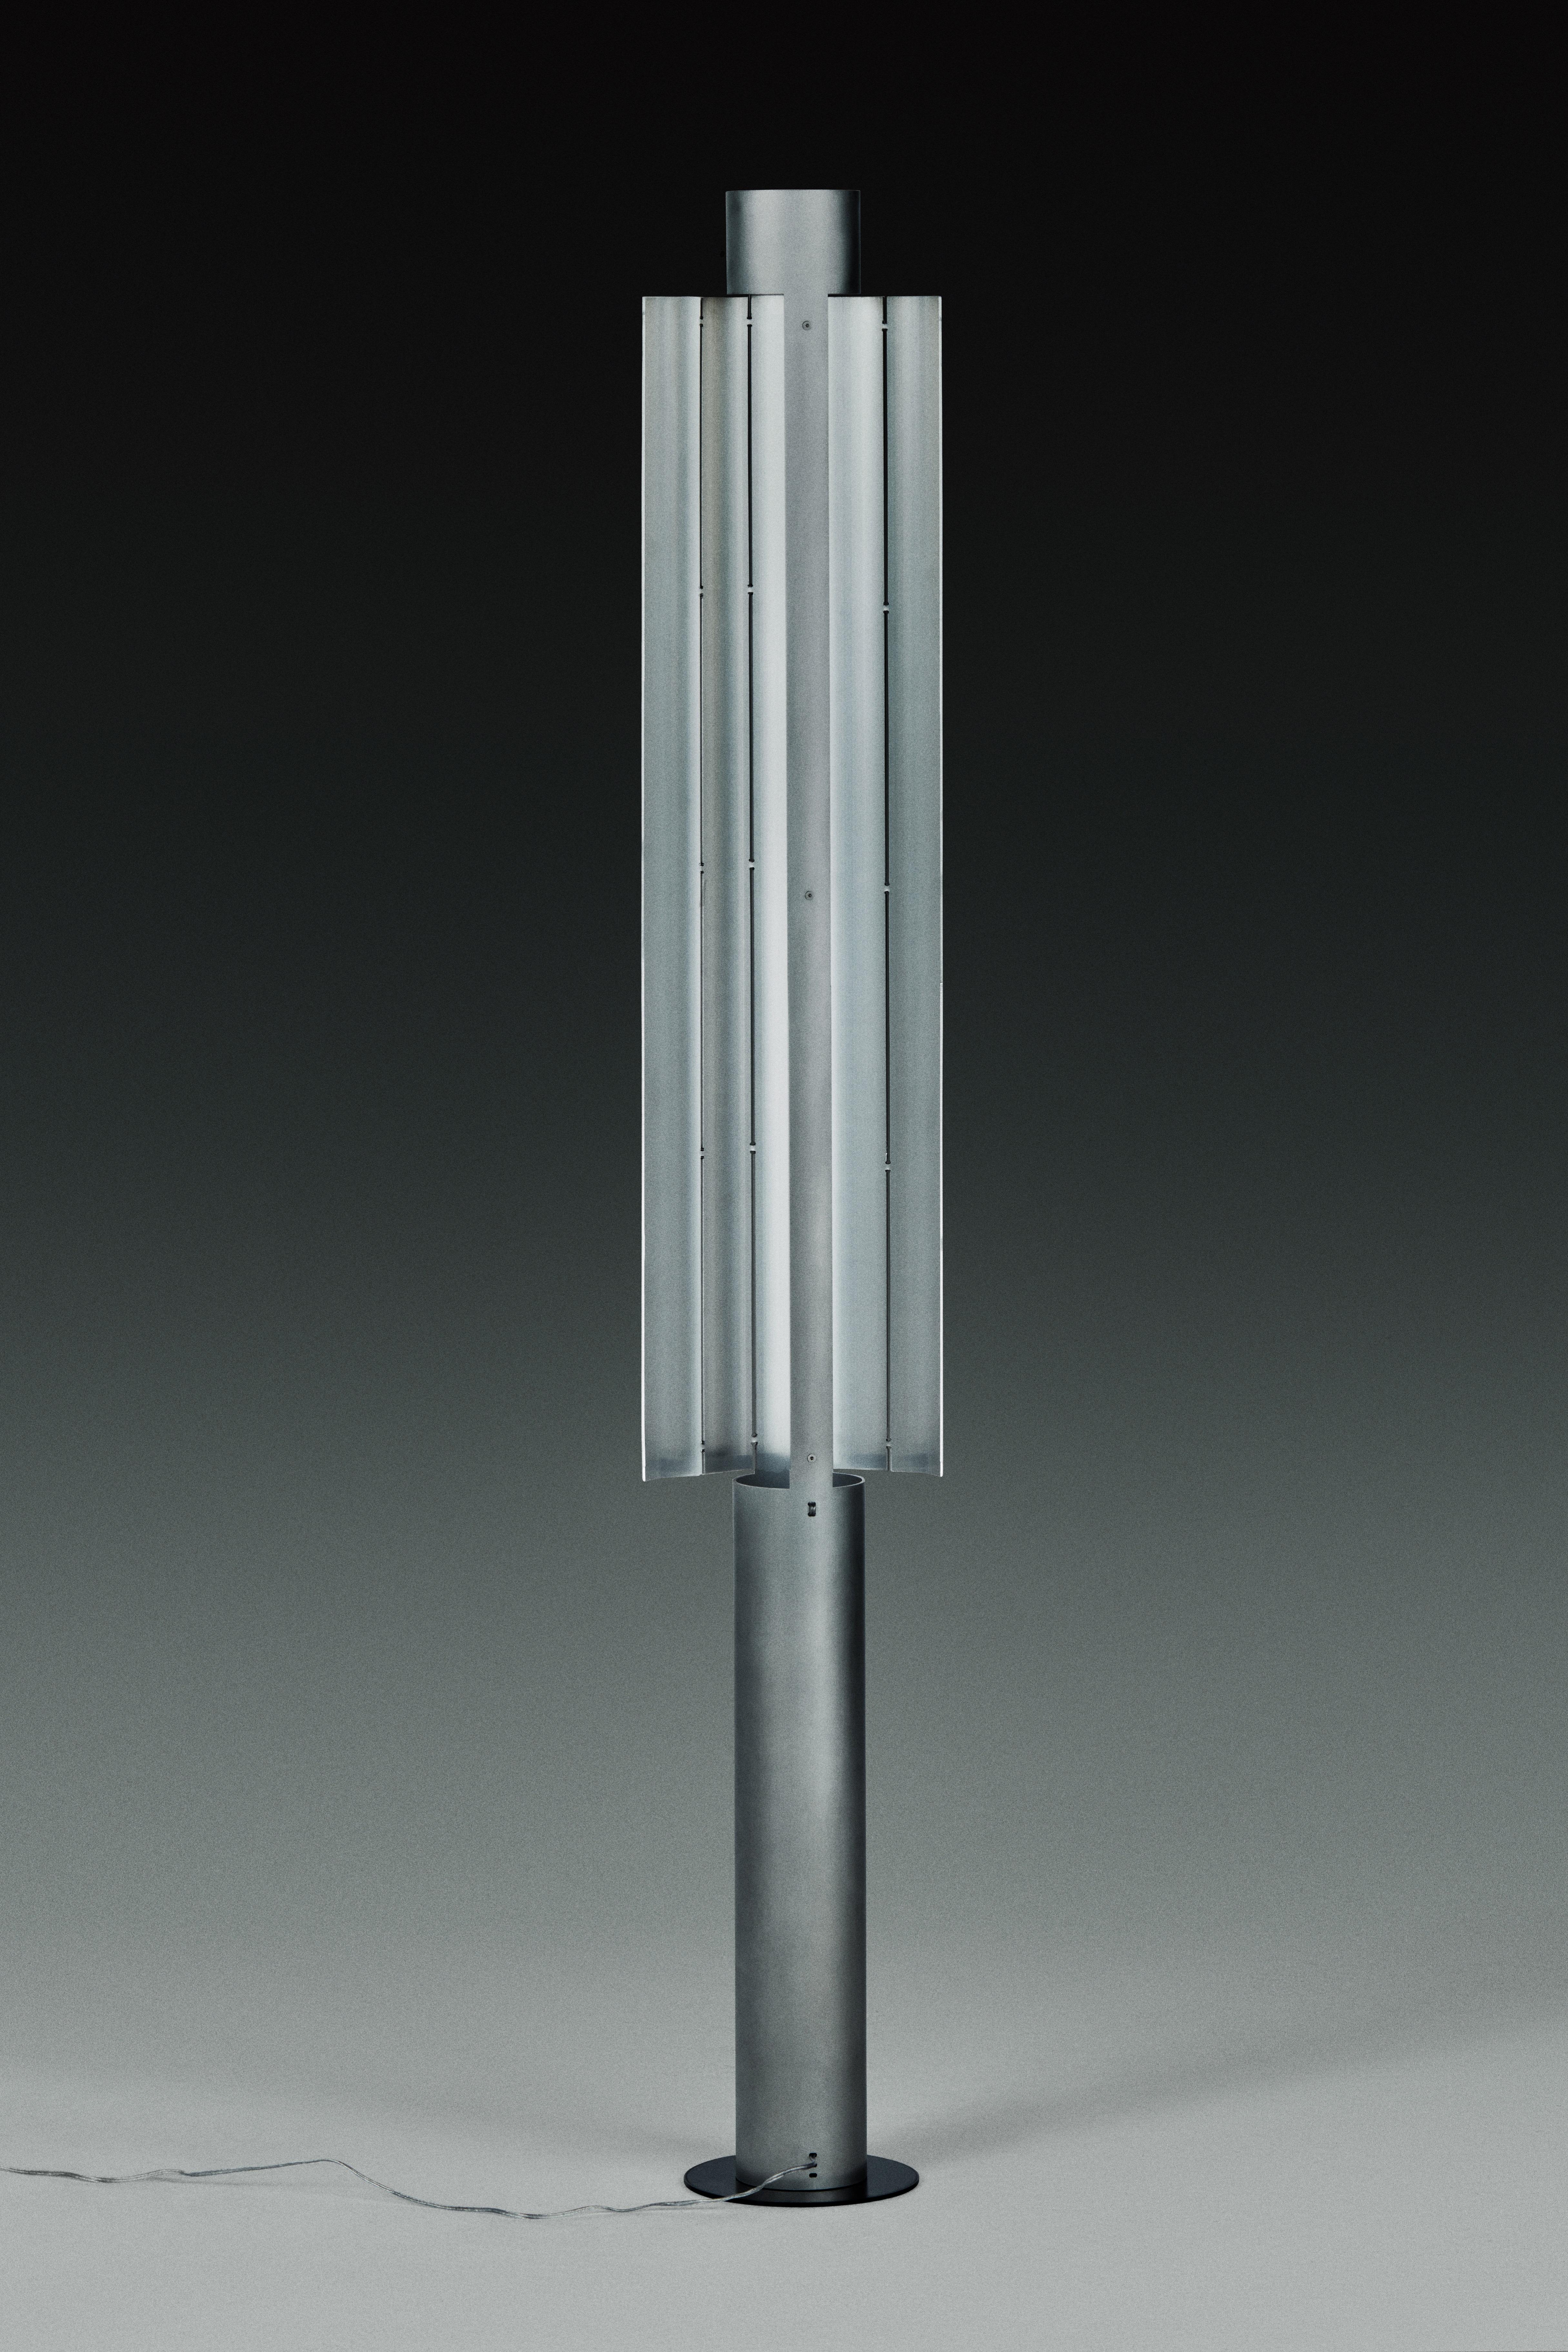 Lampadaire Gvpo de Kutarq Studio
Matériaux : Aluminium.
Dimensions : D 21 x L 16 x H 135 cm
Des longueurs personnalisées sont possibles.

Aluminium mat, patiné à la main, base PLA imprimée en 3D (argent ou noir).
Source lumineuse : 2 x bandes